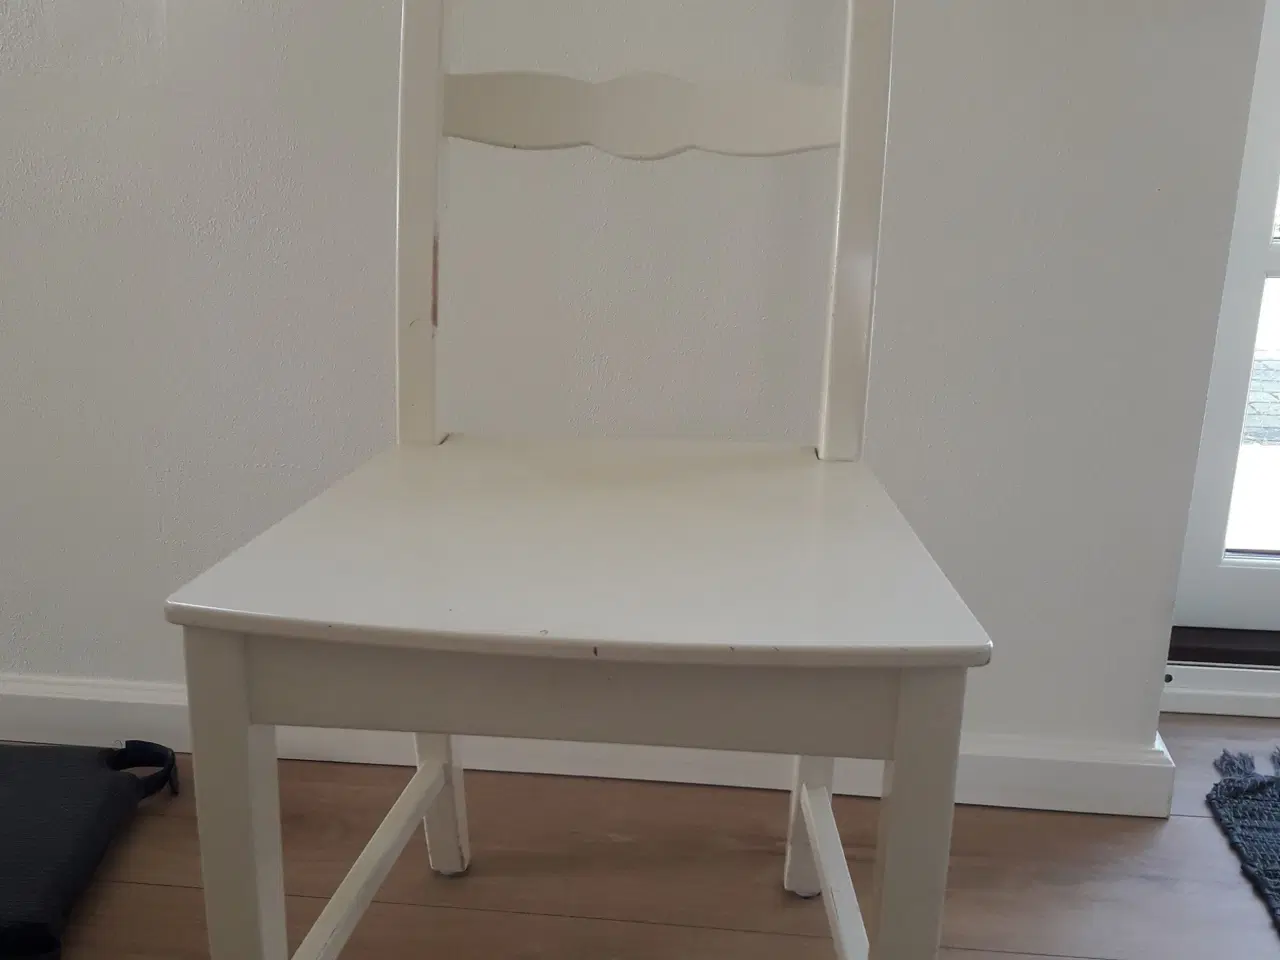 Billede 1 - Ikea Lanni stol købes